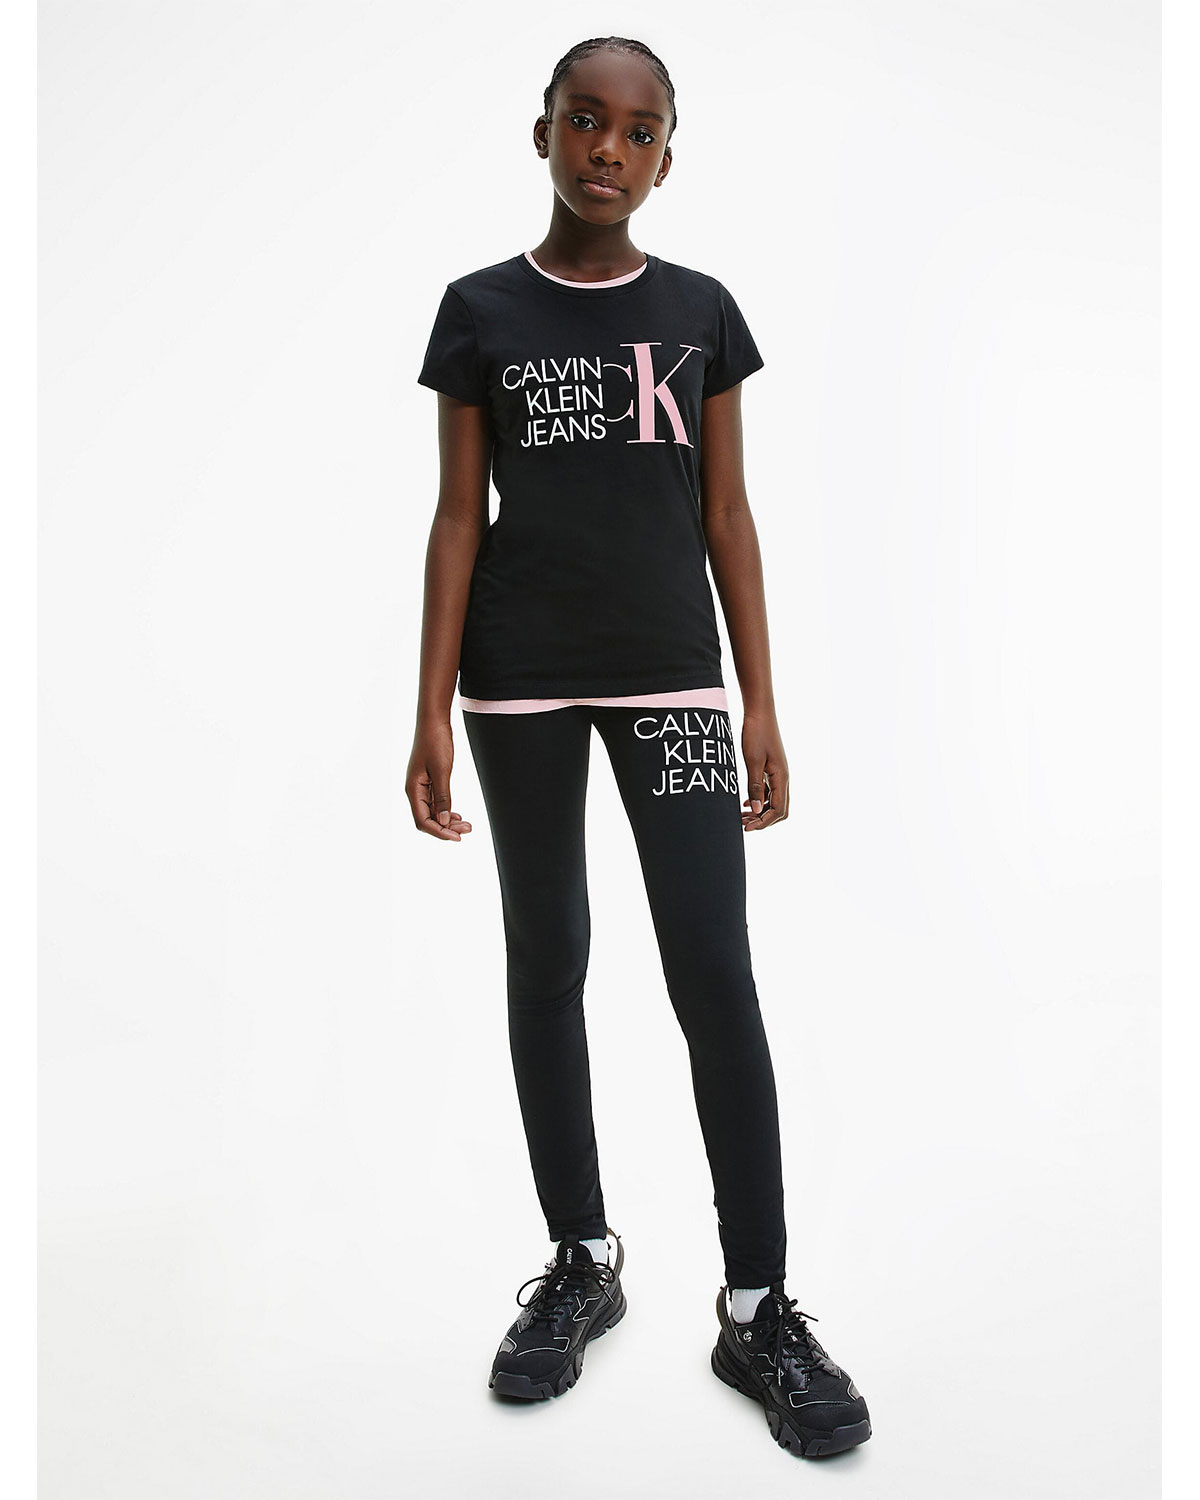 Черные леггинсы с логотипом Calvin Klein детские, размер 140, цвет черный - фото 2